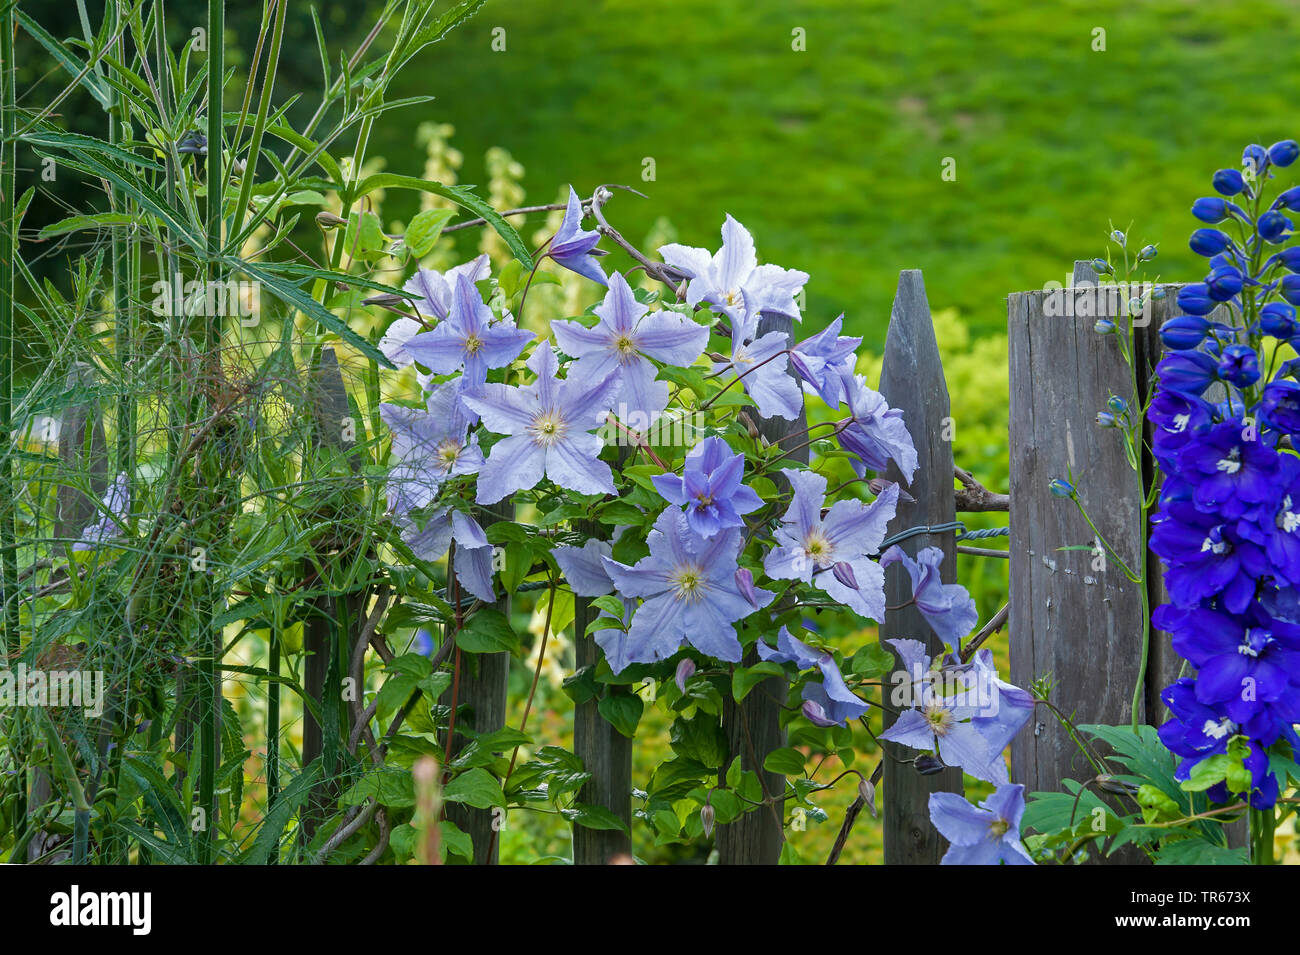 Clematis (Clematis 'Blekitny Aniol', clemátide Blekitny Aniol), floreciendo en una valla, cultivar Blekitny Aniol, Países Bajos Foto de stock